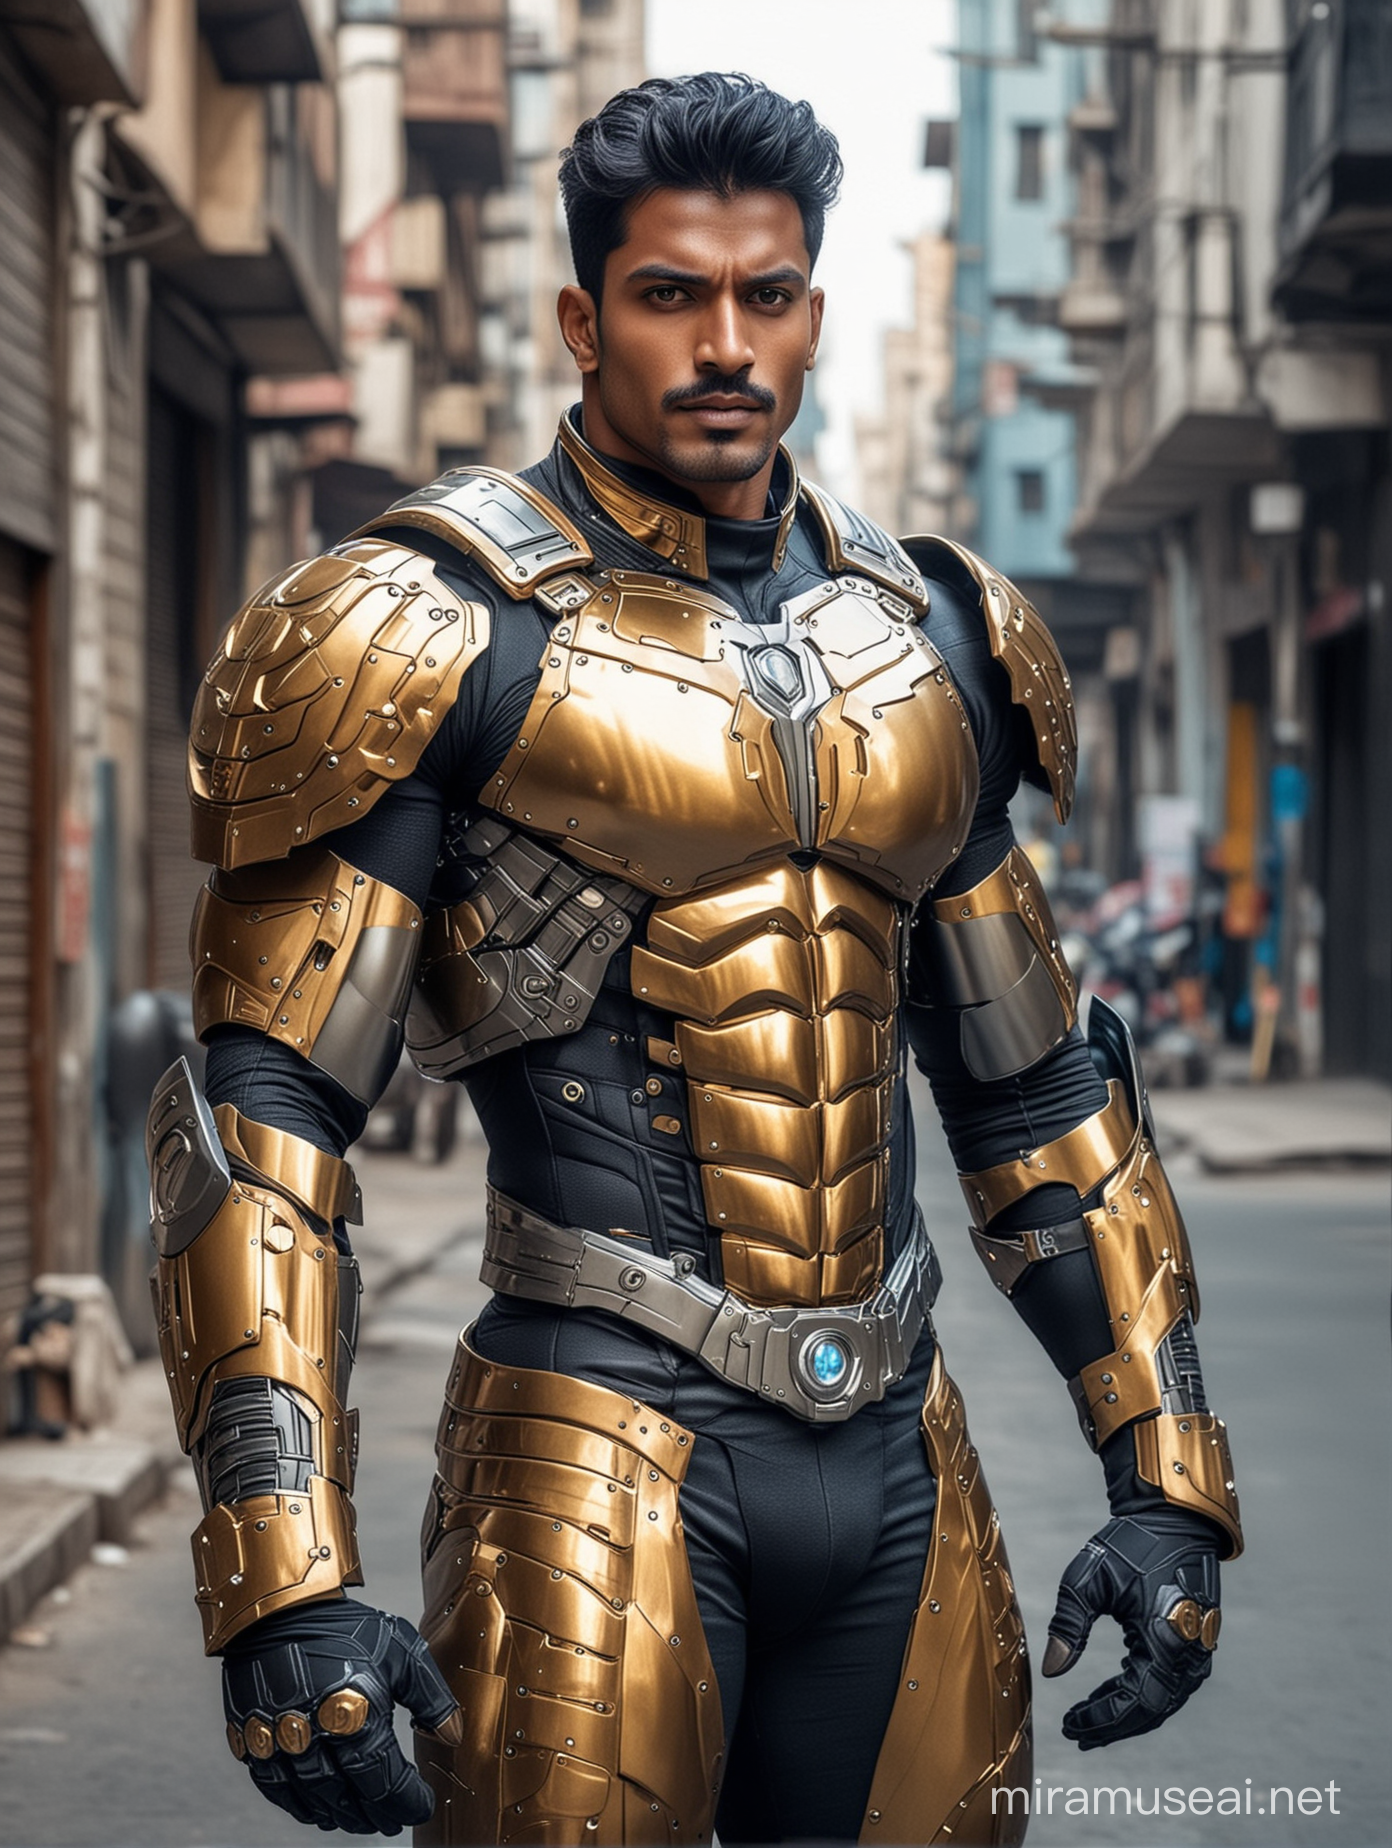 Indian Bodybuilder in SciFi Armor on Urban Street